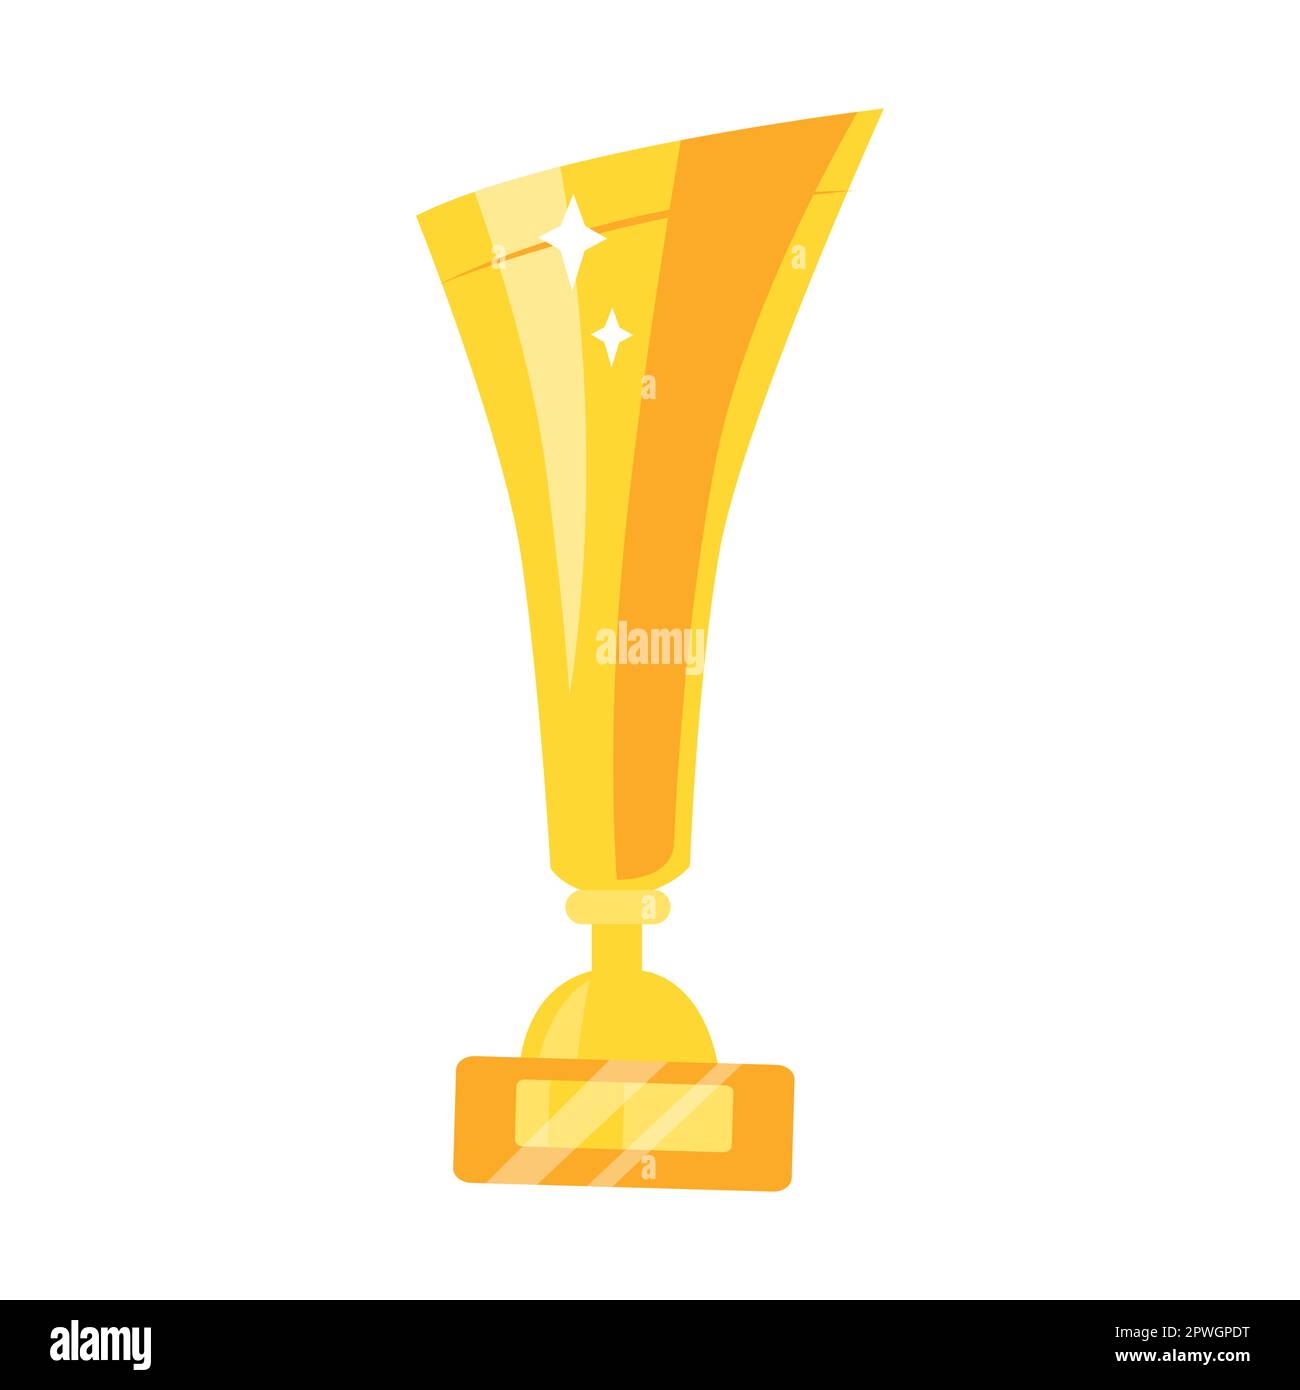 Coupe Du Trophée D'or En Illustration Plate De Vecteur De Récompense De  Style Dessin Animé Isolée Sur Fond Blanc